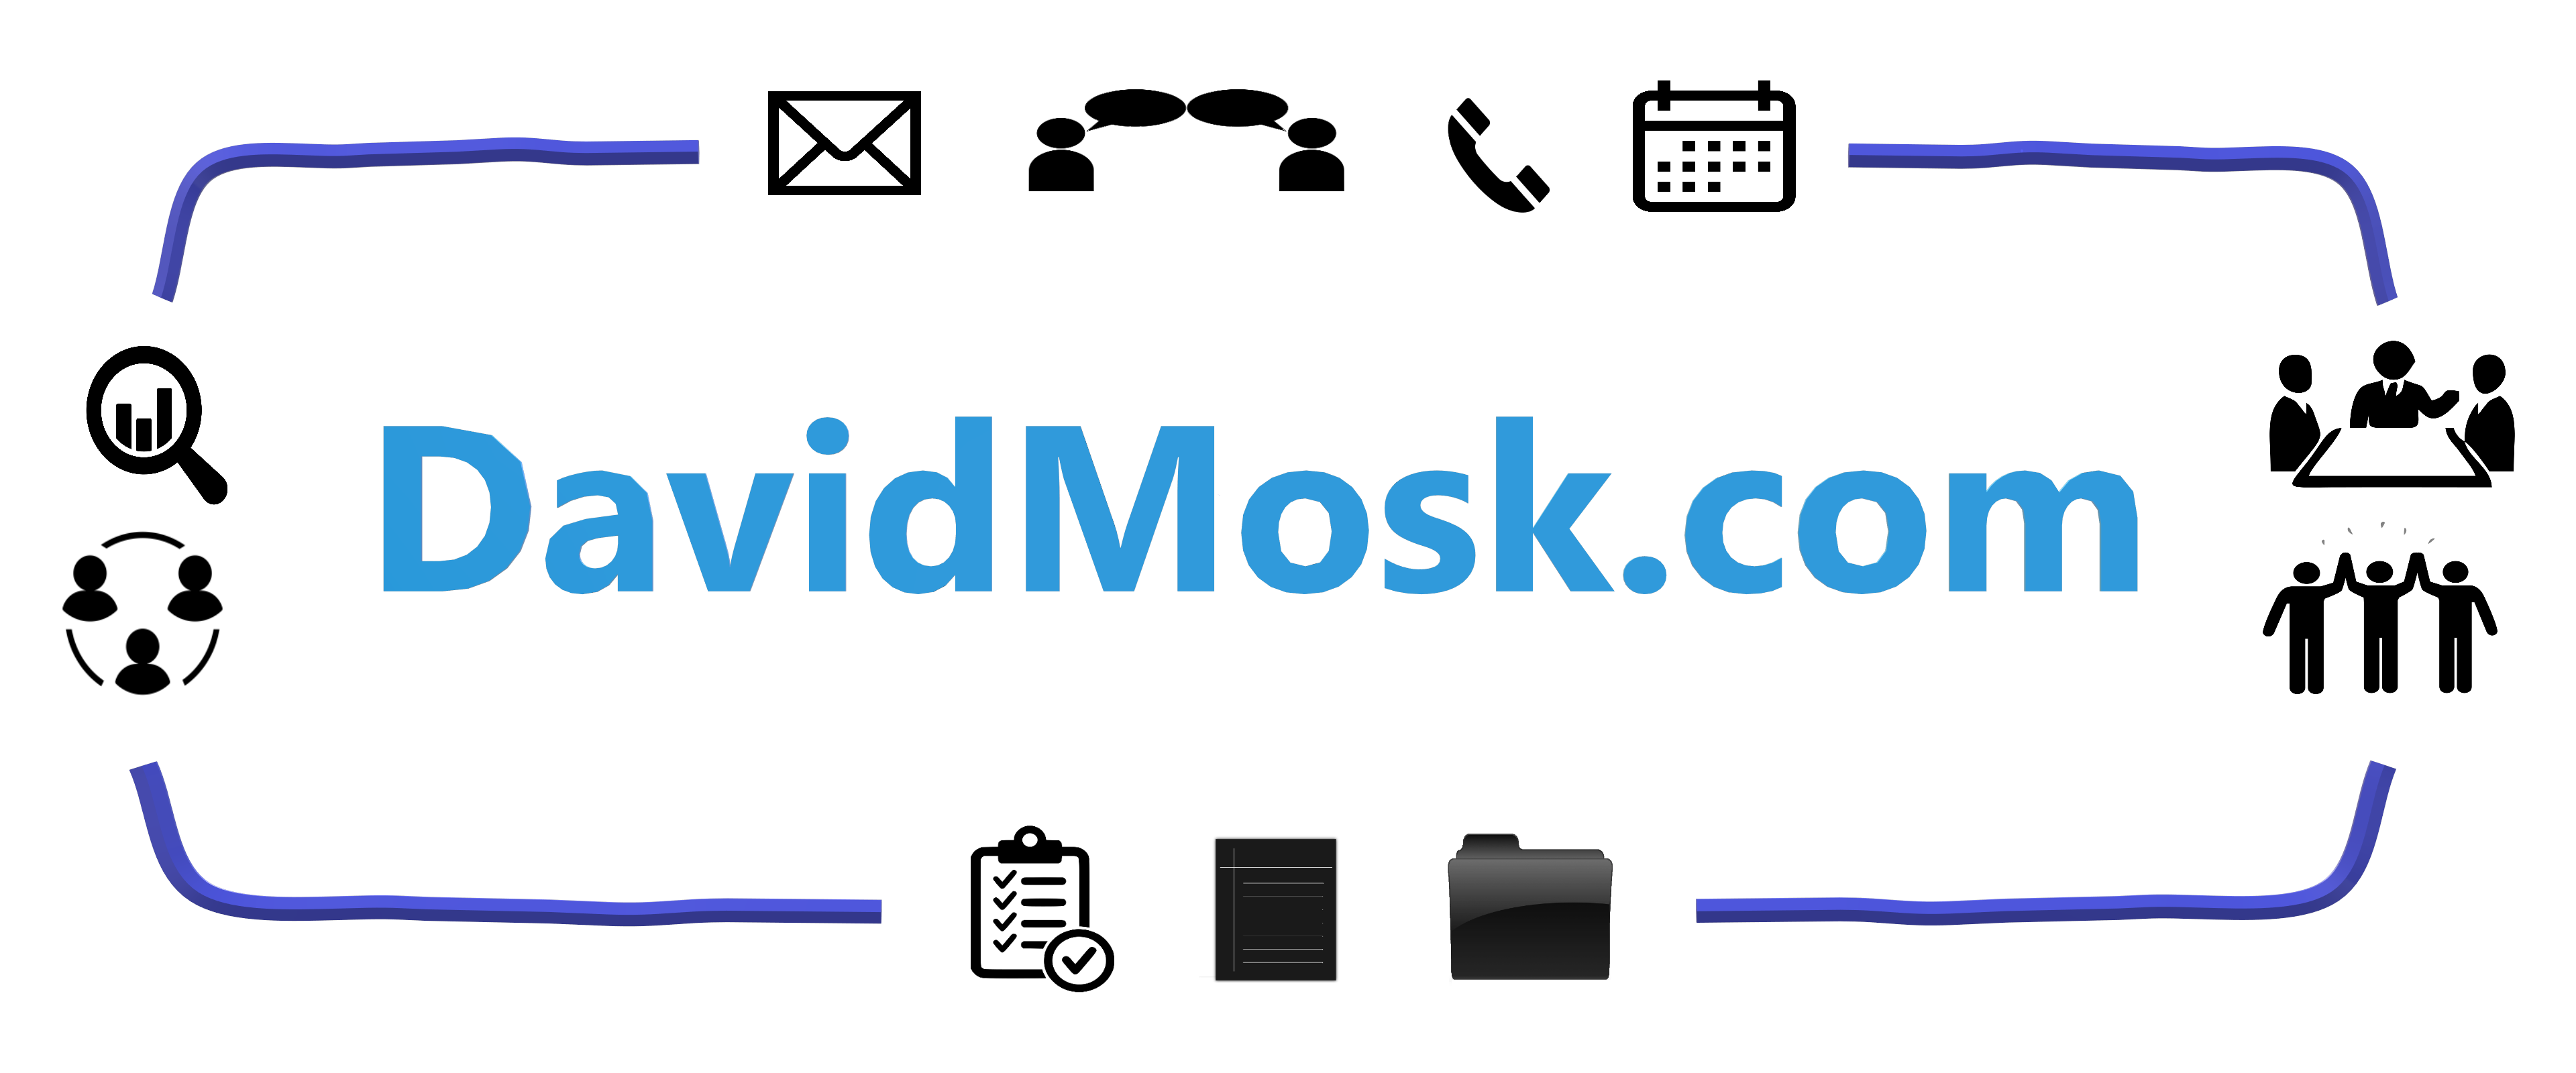 DavidMosk.com